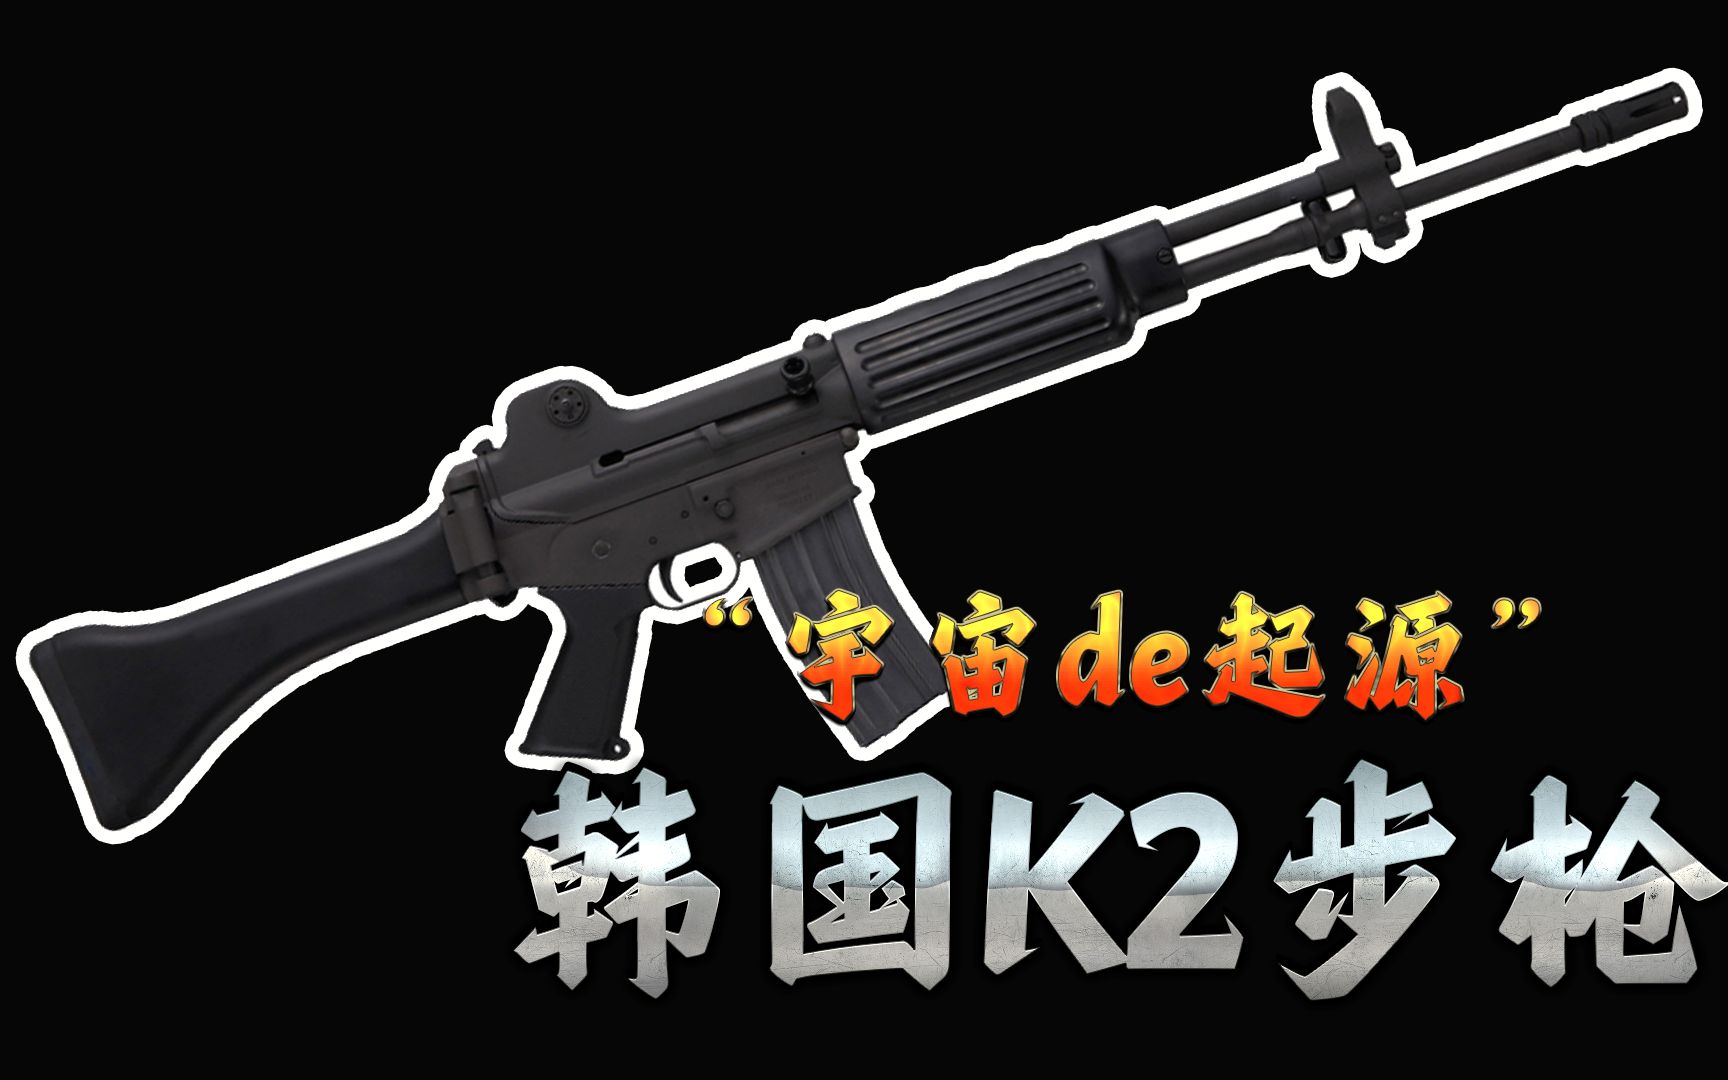 【冷战短剑】“宇宙de起源”— 韩国K2步枪小传